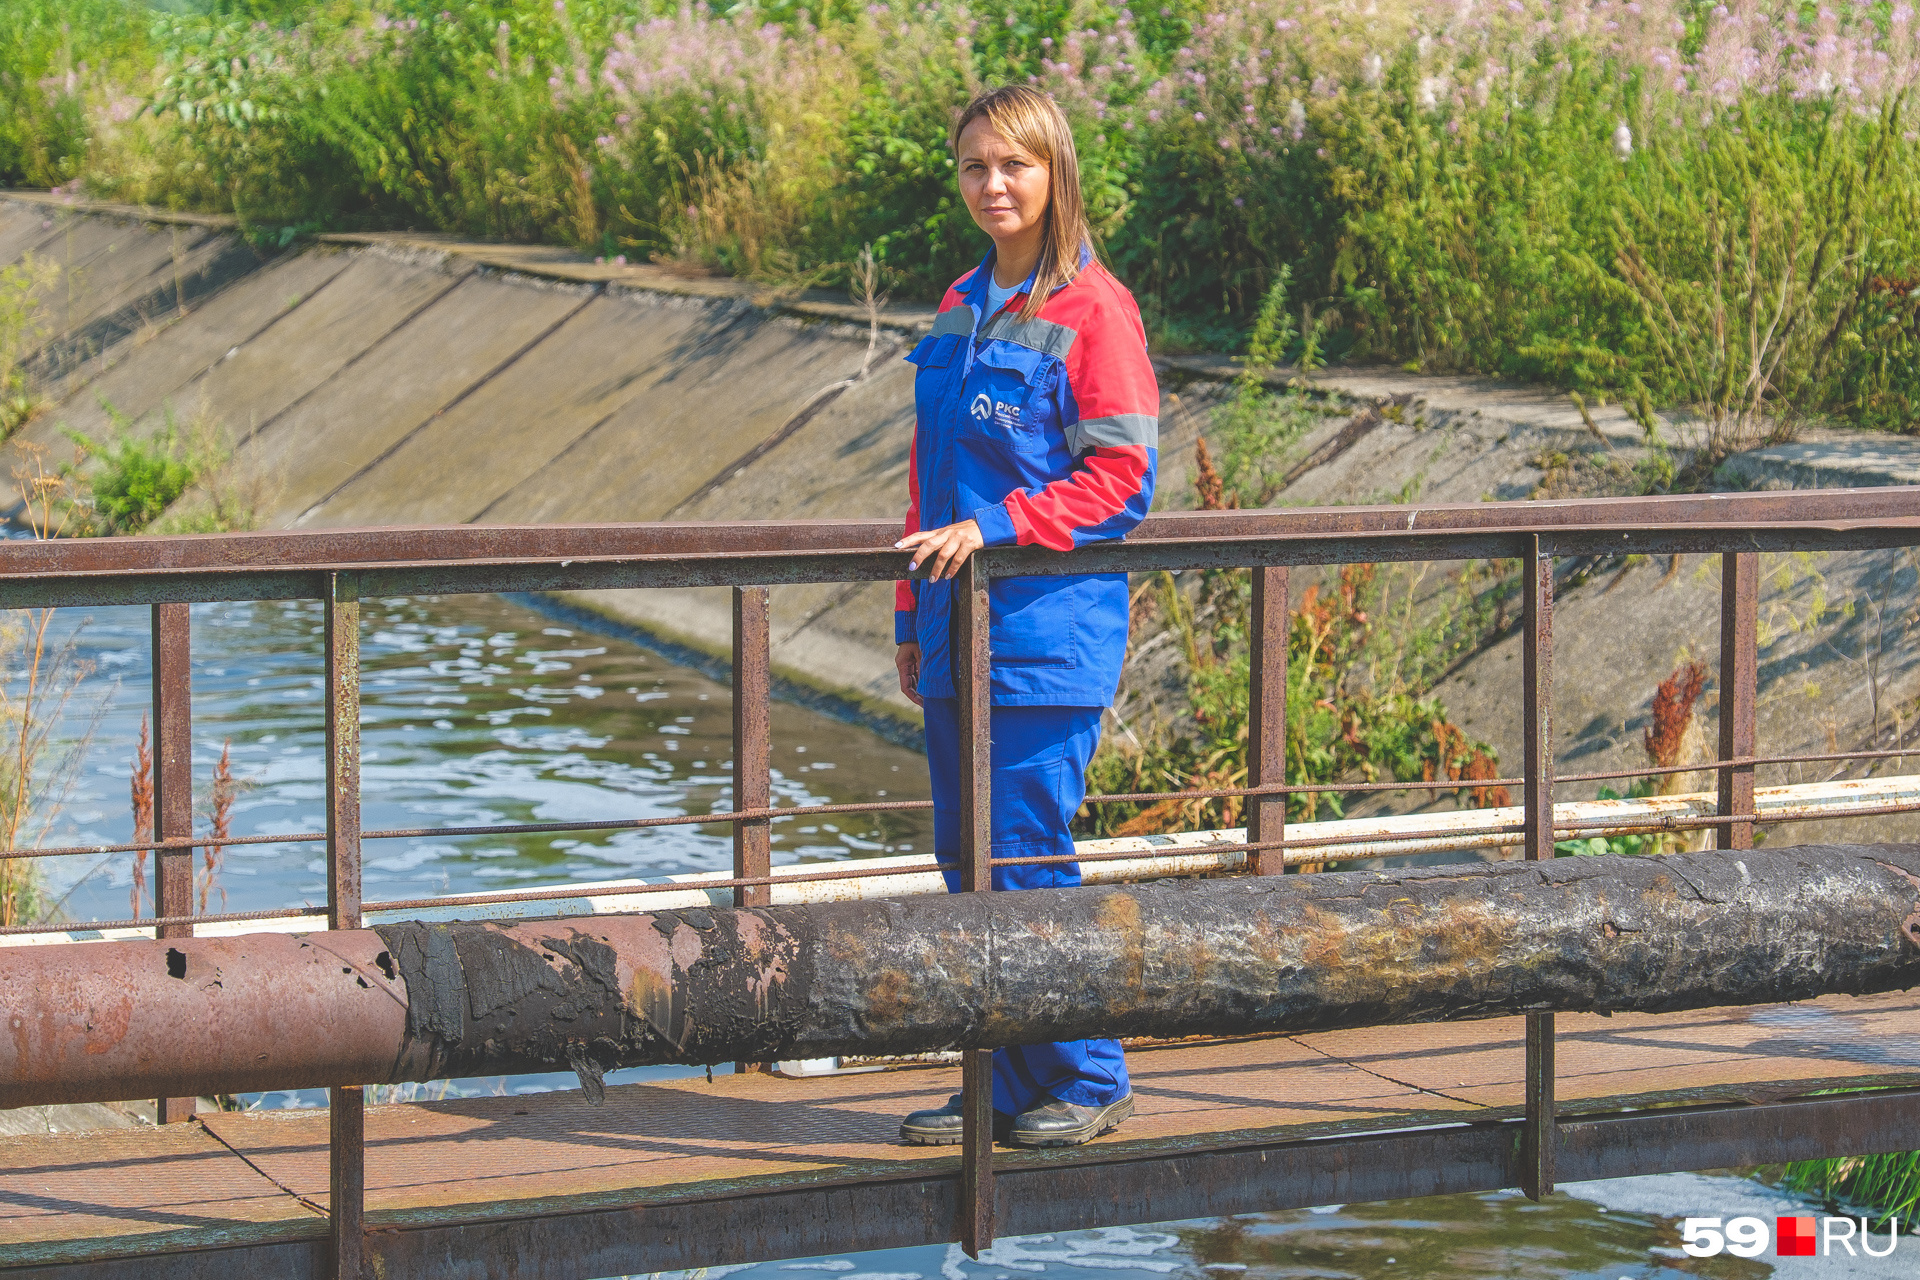 Анна Дудакова стоит на мостике над каналом с очищенной водой. Тут пахнет свежестью и рекой